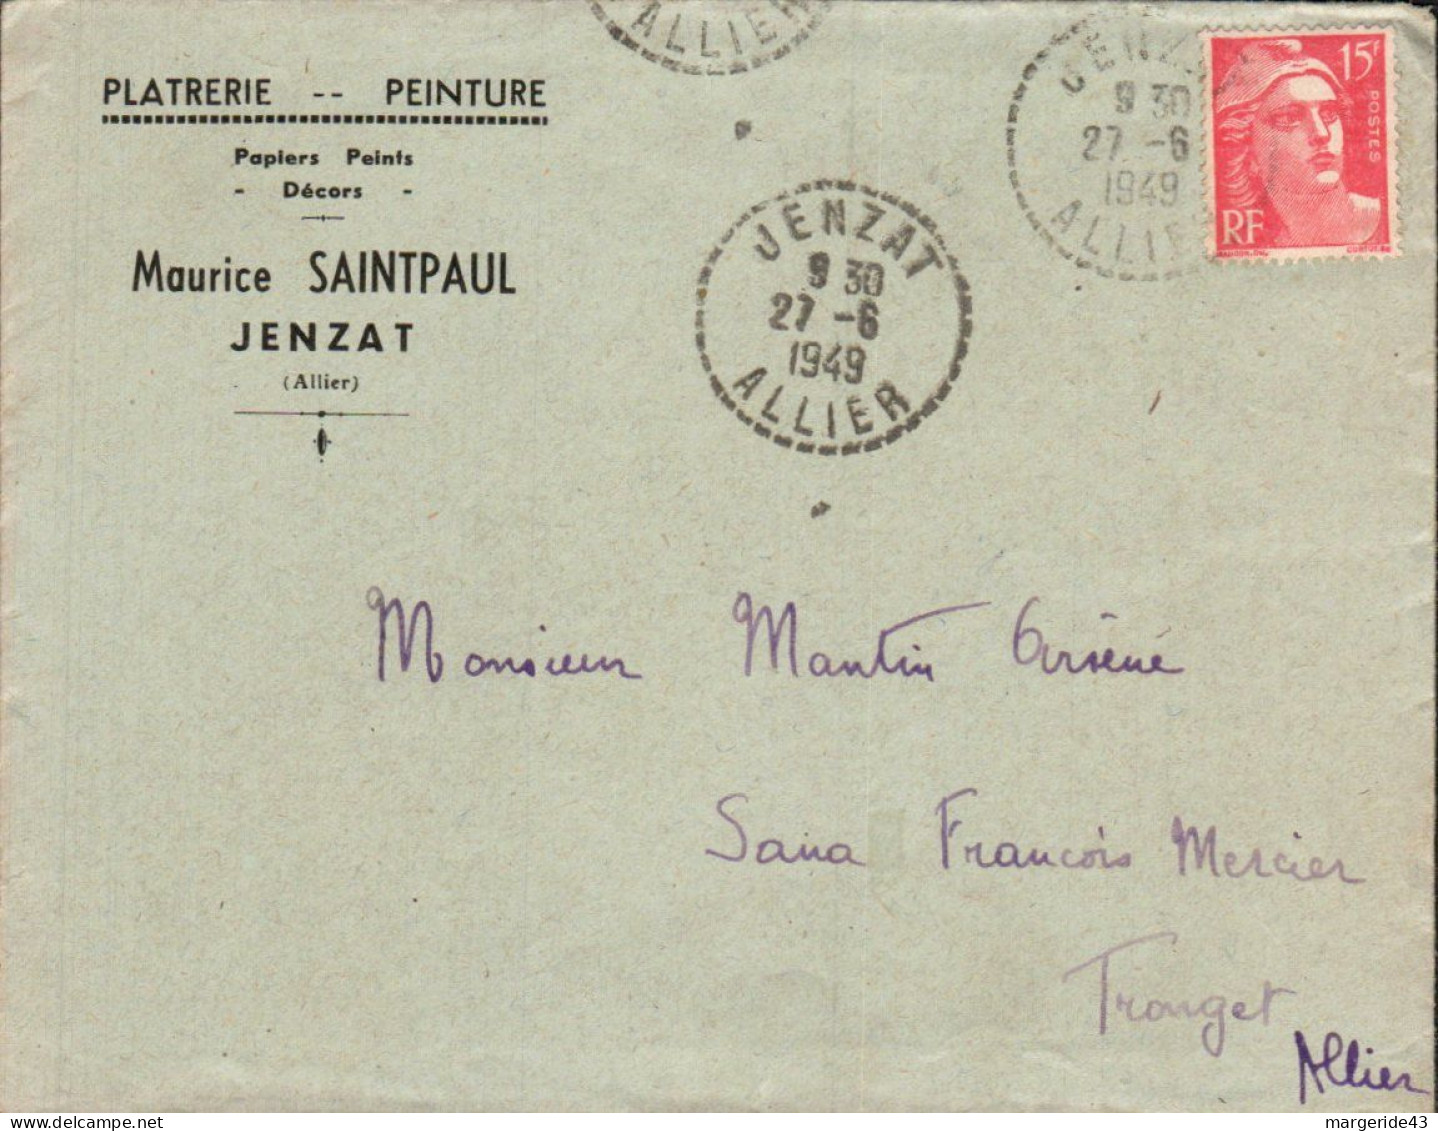 GANDON SUR LETTRE A EN TETE DE JENZAT 1949 - Posttarife